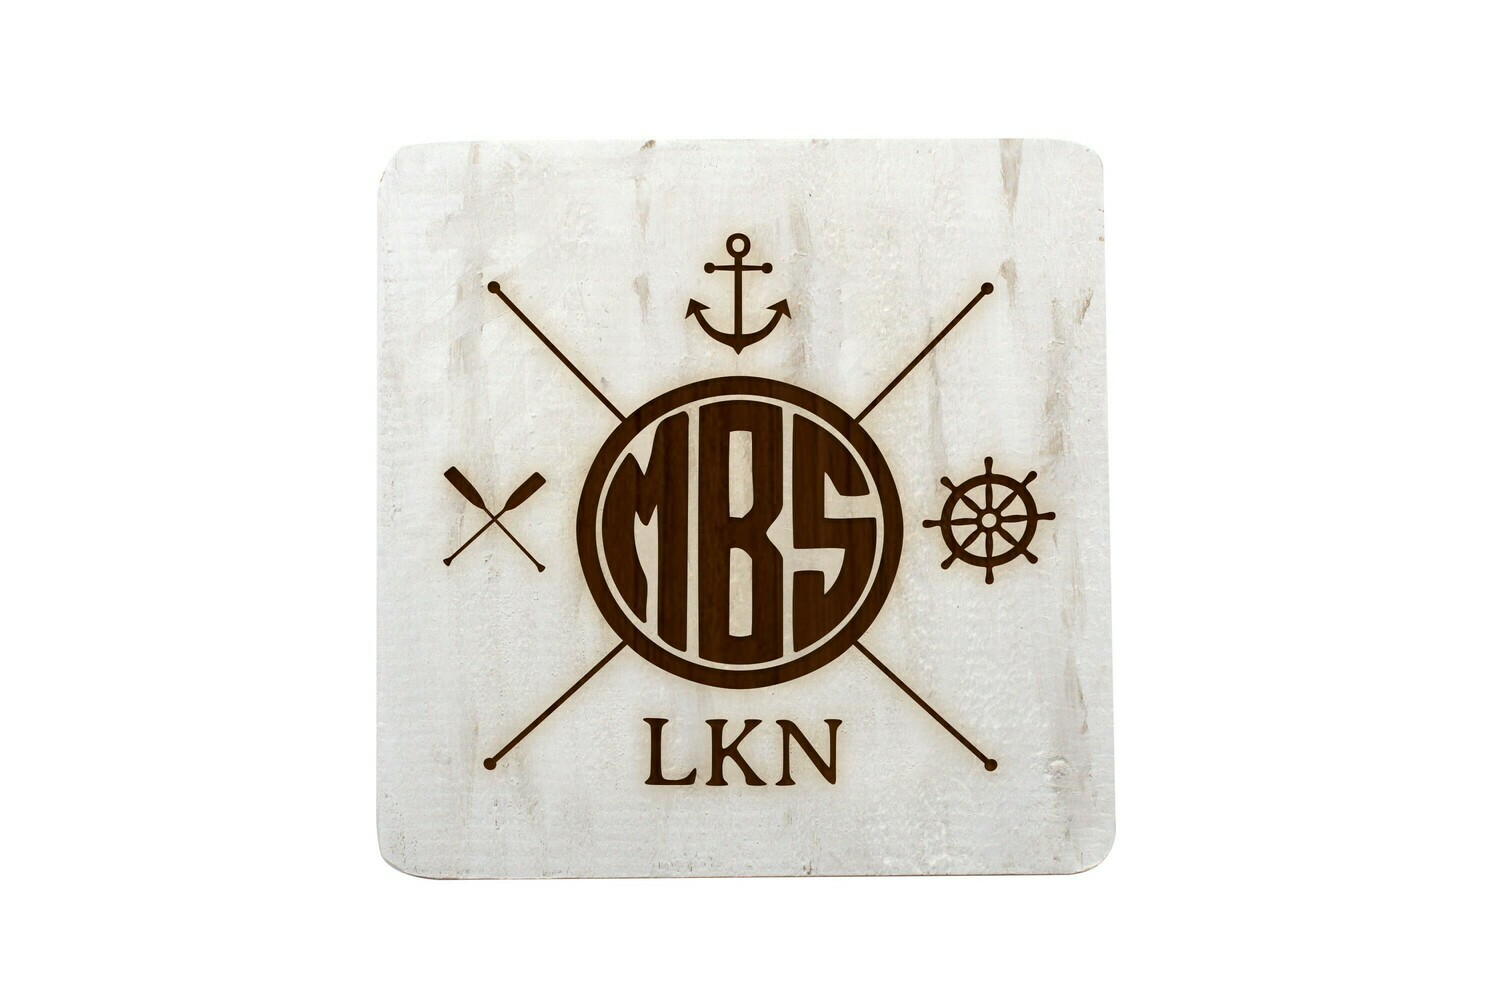 Monogram w/Nautical Themes Hand-Painted Wood Coaster Set